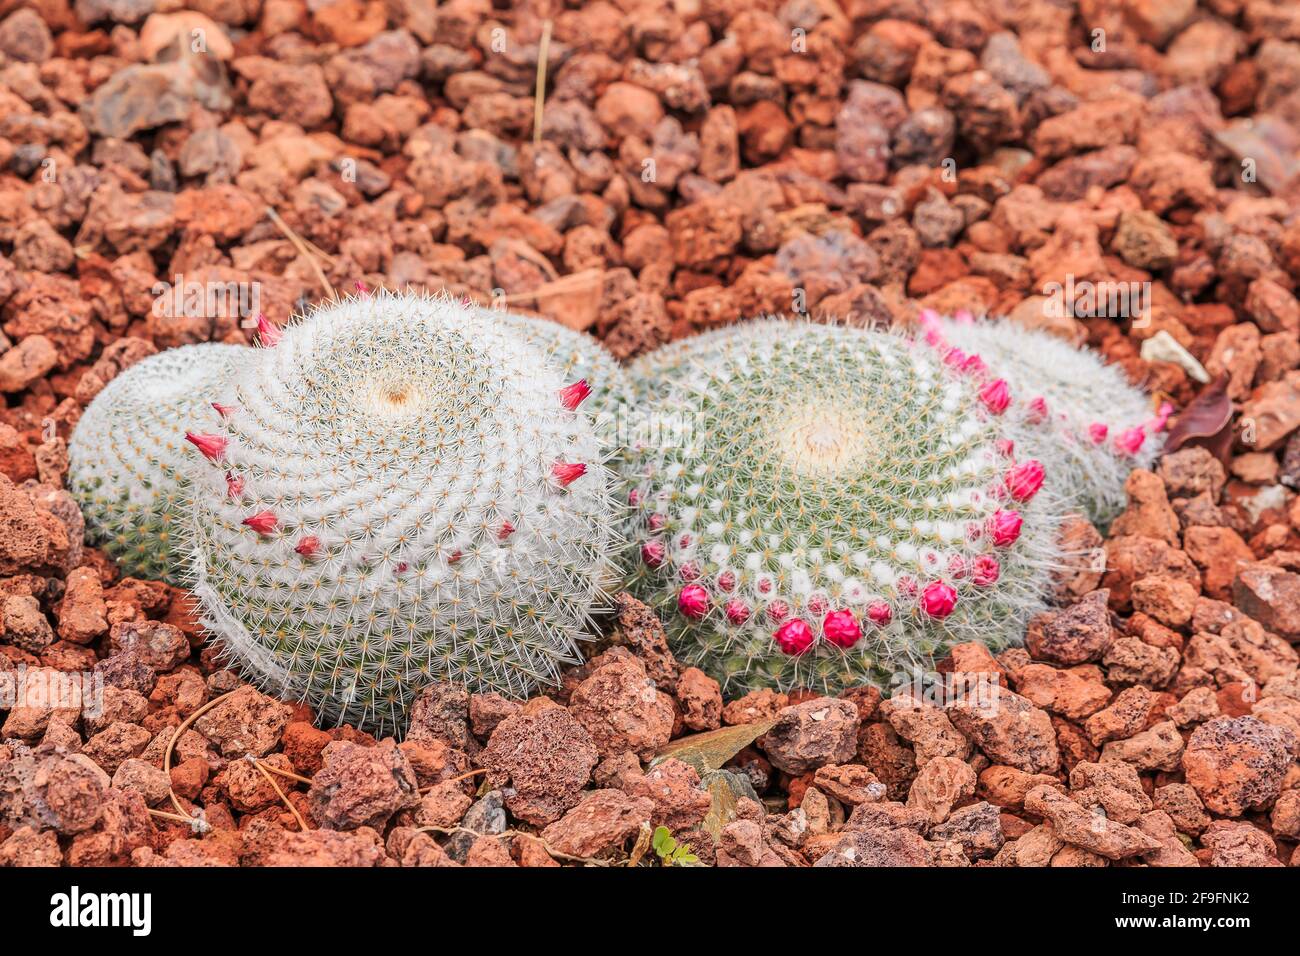 Kaktus mammillaria muehlenpfordtii auf braunem steinigen Boden im Herbst mit vielen weißen Stacheln und rosa Blüten. Herkunftsland Mexiko auf dem Amerika Stockfoto